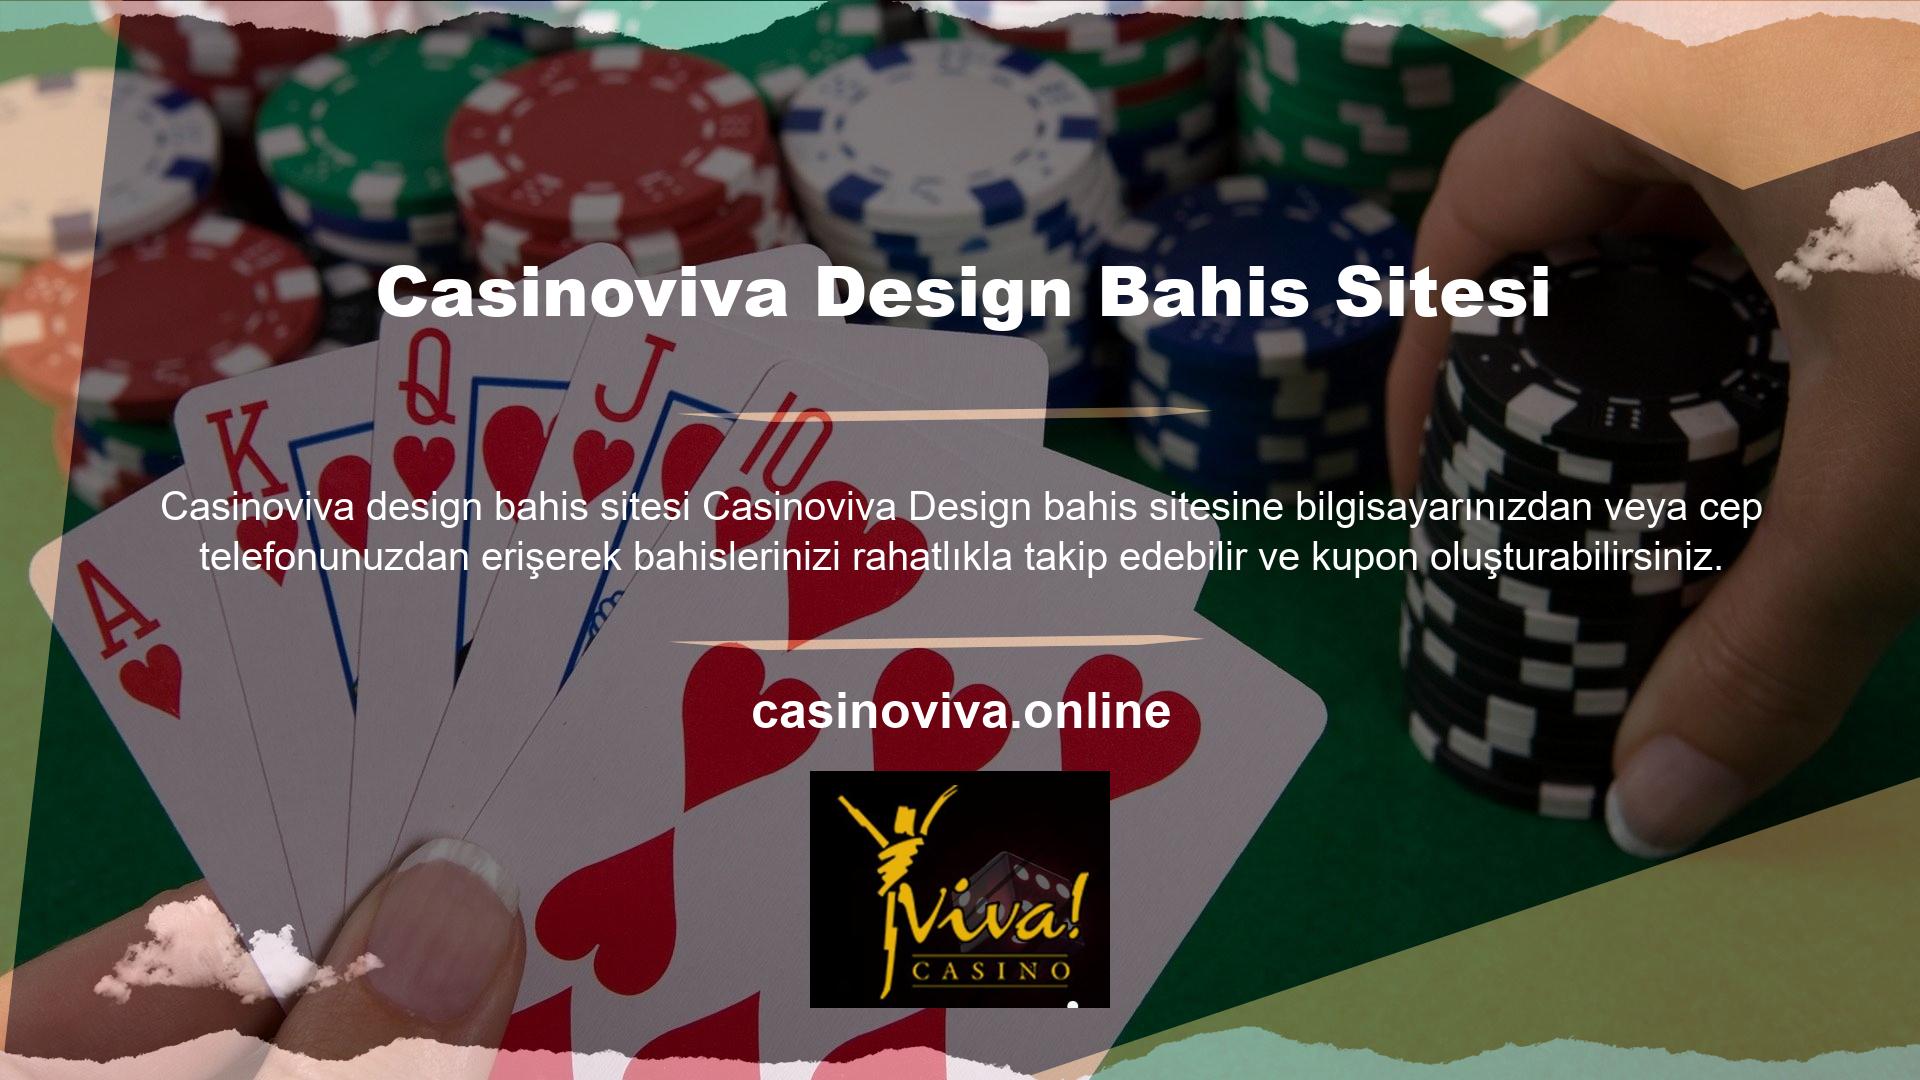 Casinoviva online casino sitesi iyi tasarlanmış ve kullanımı kolaydır, bu yüzden çok popülerdir